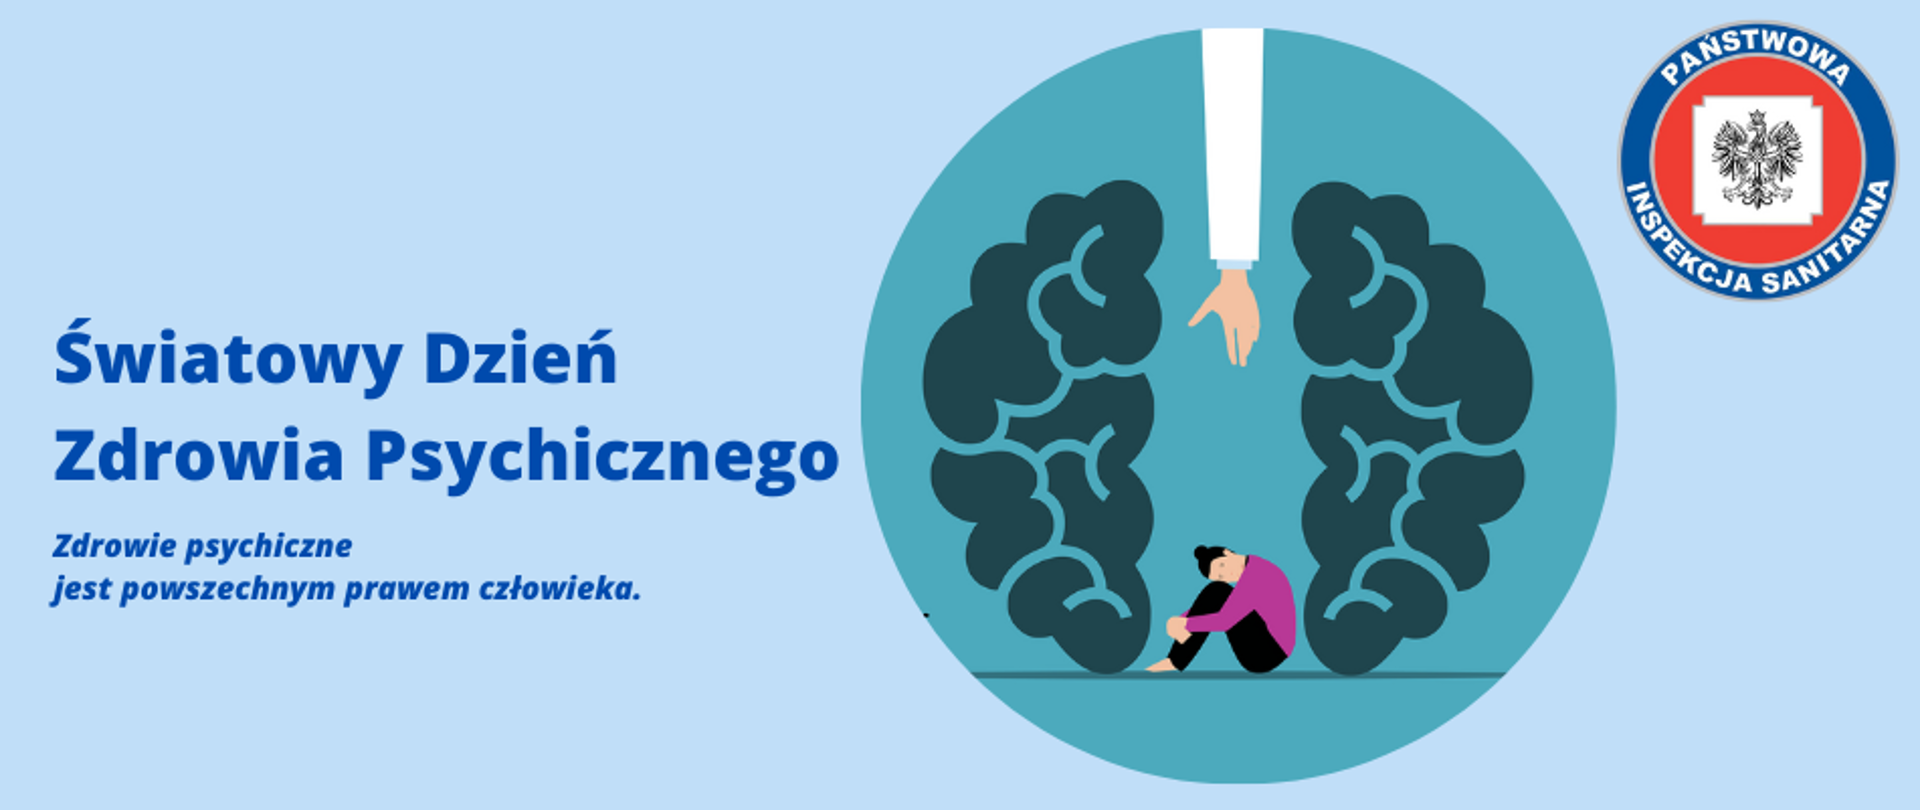 zdjęcie przedstawia tytuł: "Światowy Dzień Zdrowia Psychicznego" z hasłem tegorocznym "Zdrowie psychiczne
jest powszechnym prawem człowieka." Grafika przedstawia półkole mózgu pomiędzy siedzi skulona kobieta. Widoczne logi Państwowej Inspekcji Sanitarnej